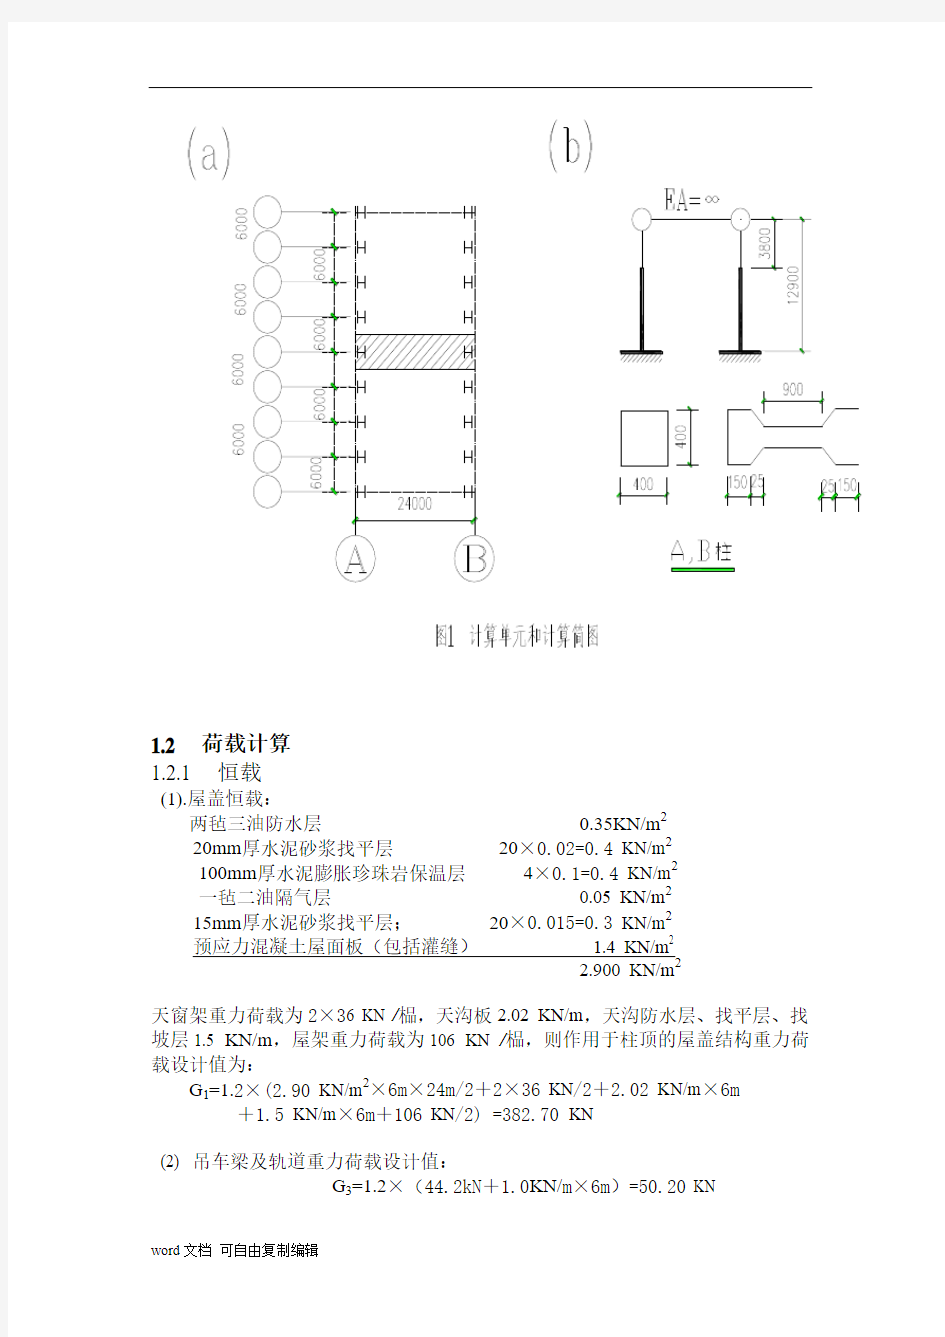 单层工业厂房课程设计计算书(完整)